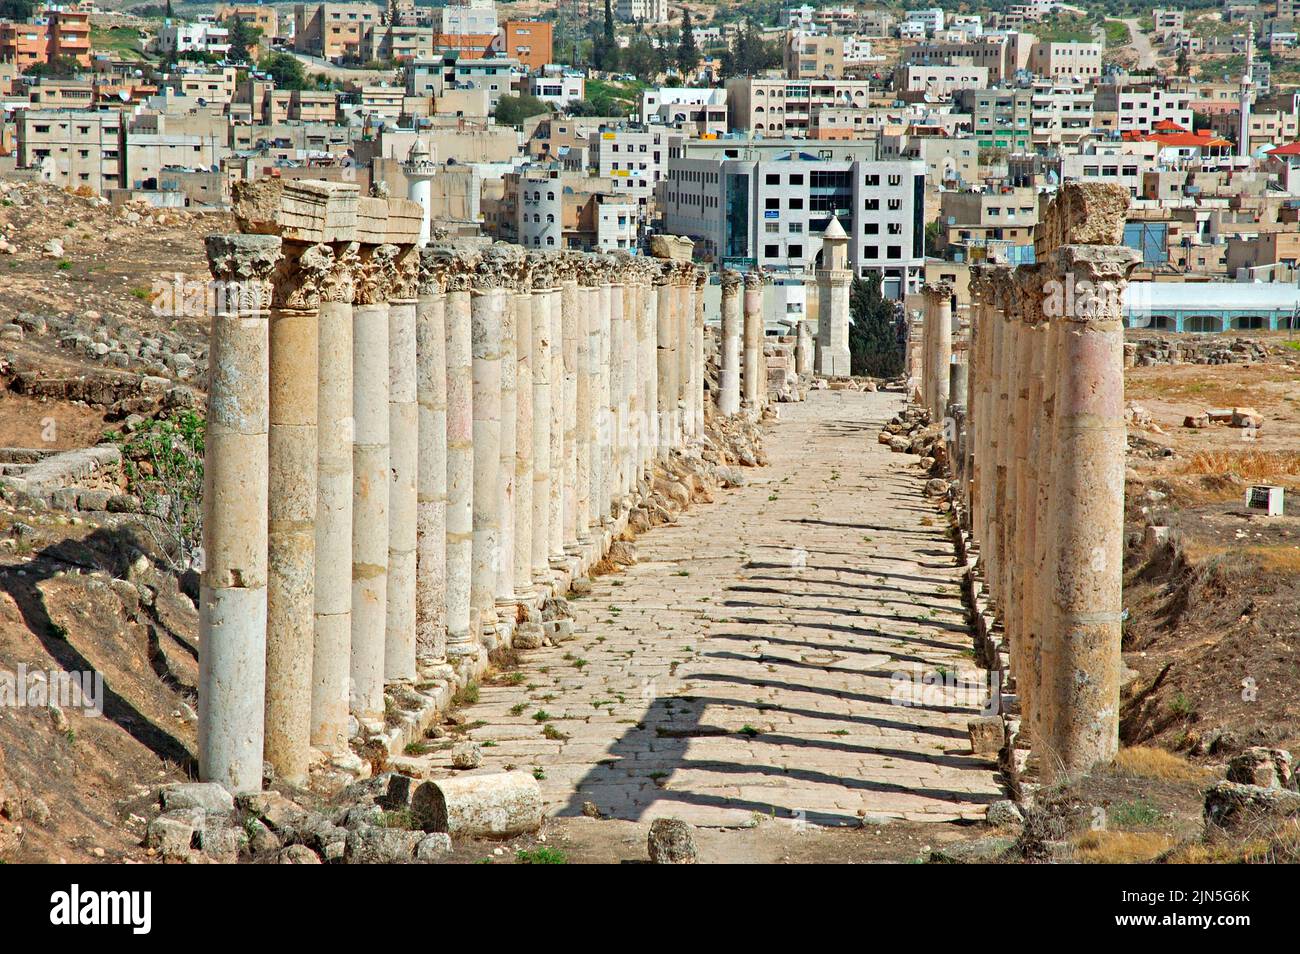 Jordania, sitio arqueológico de Jerash Foto de stock